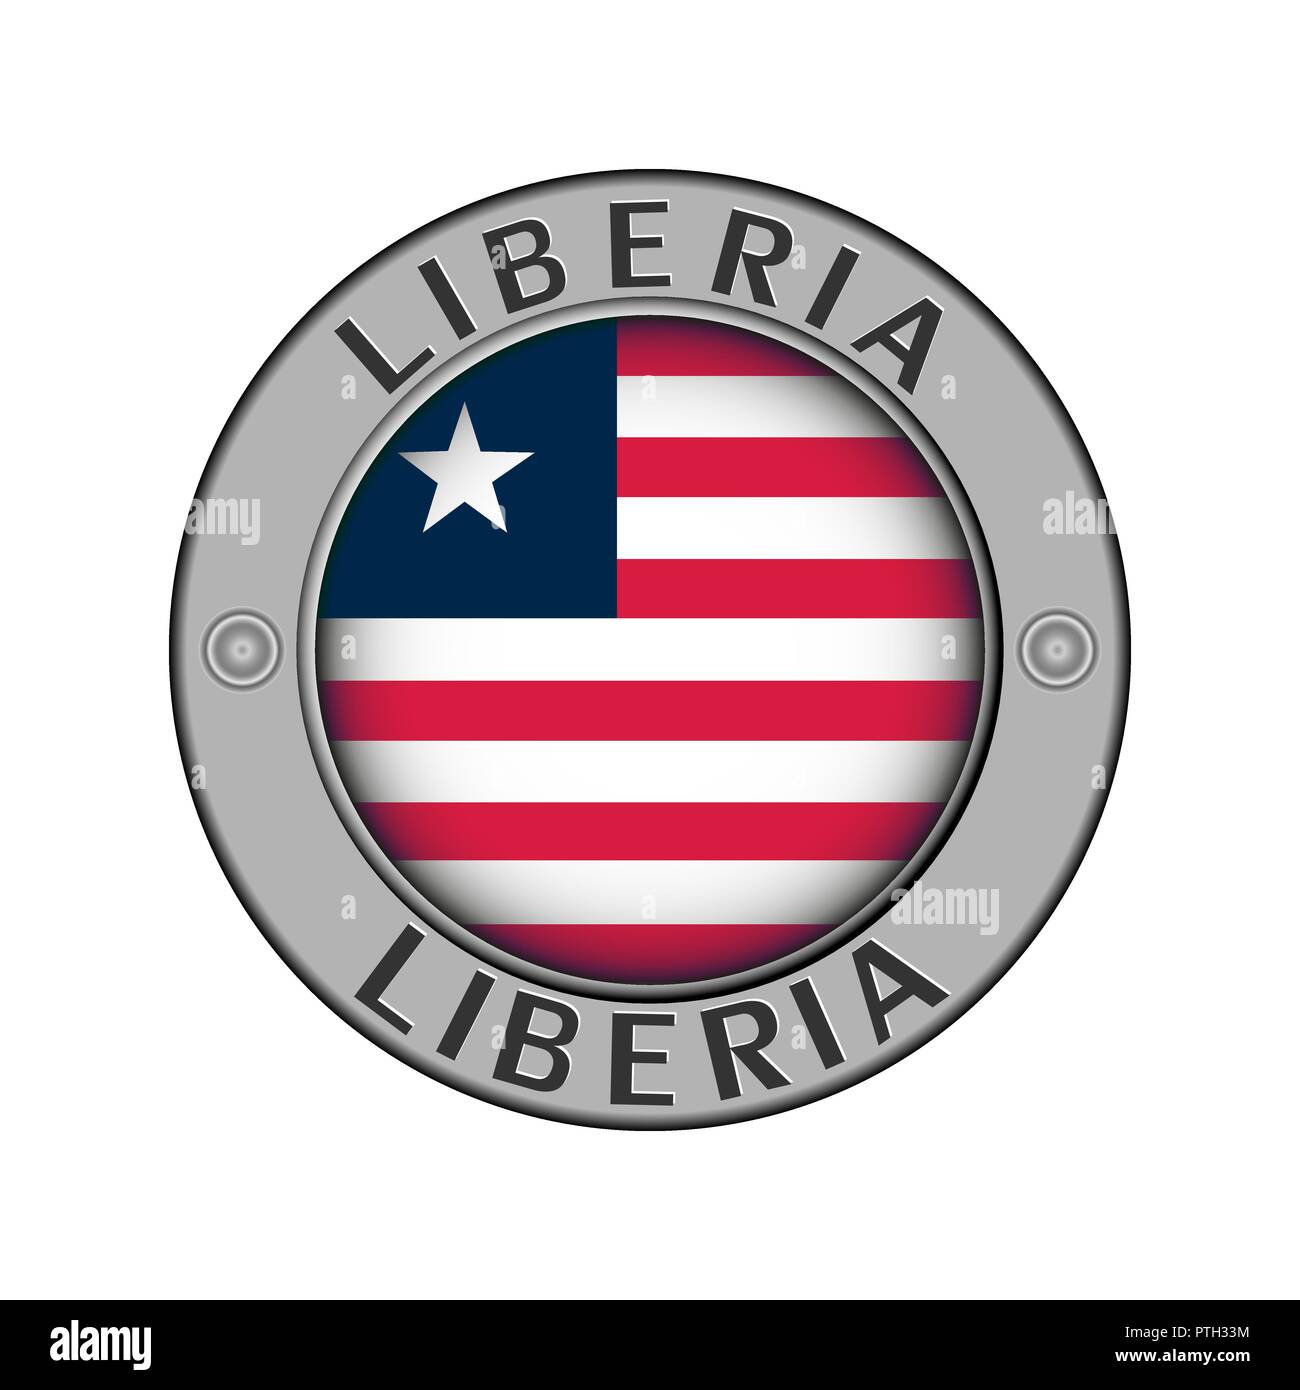 Rotondo di metallo medaglione con il nome del paese di Liberia e una bandiera rotonda nel centro Illustrazione Vettoriale